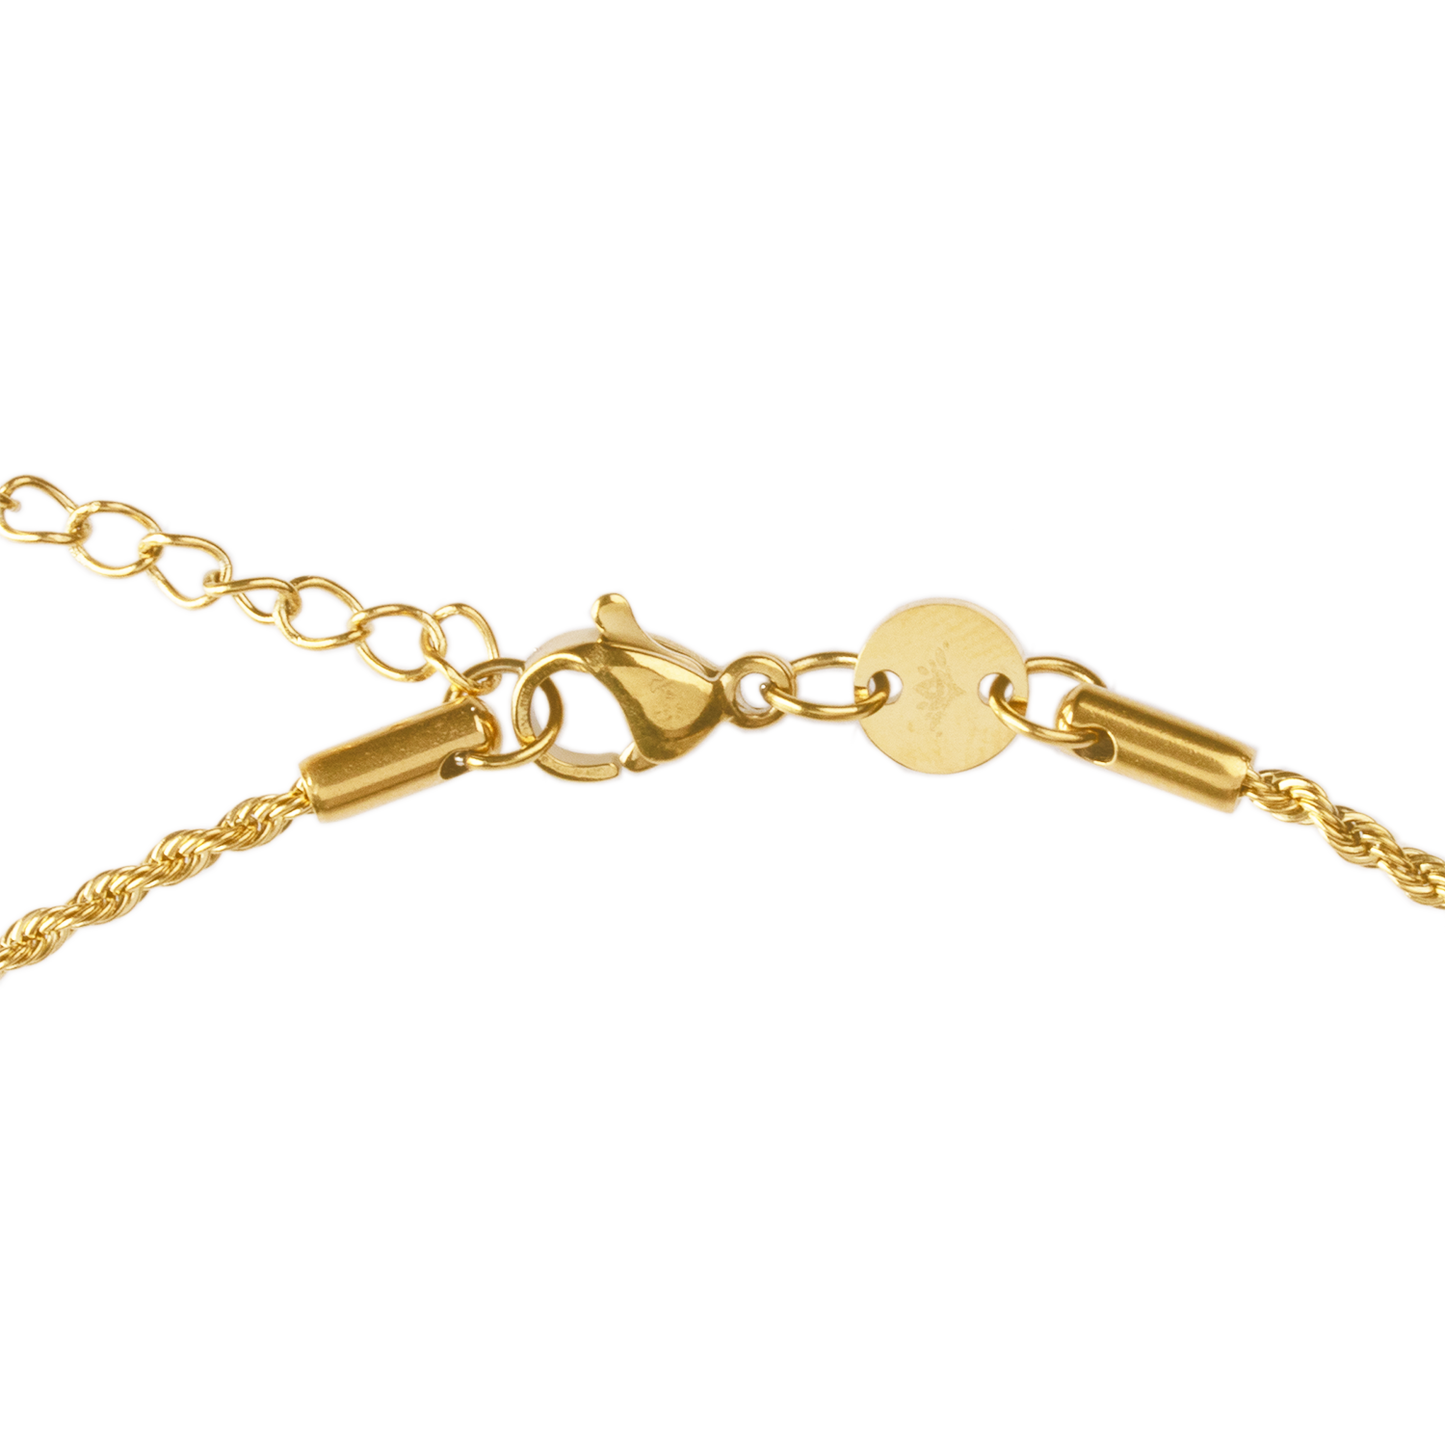 Taurus / Stier Necklace Gold